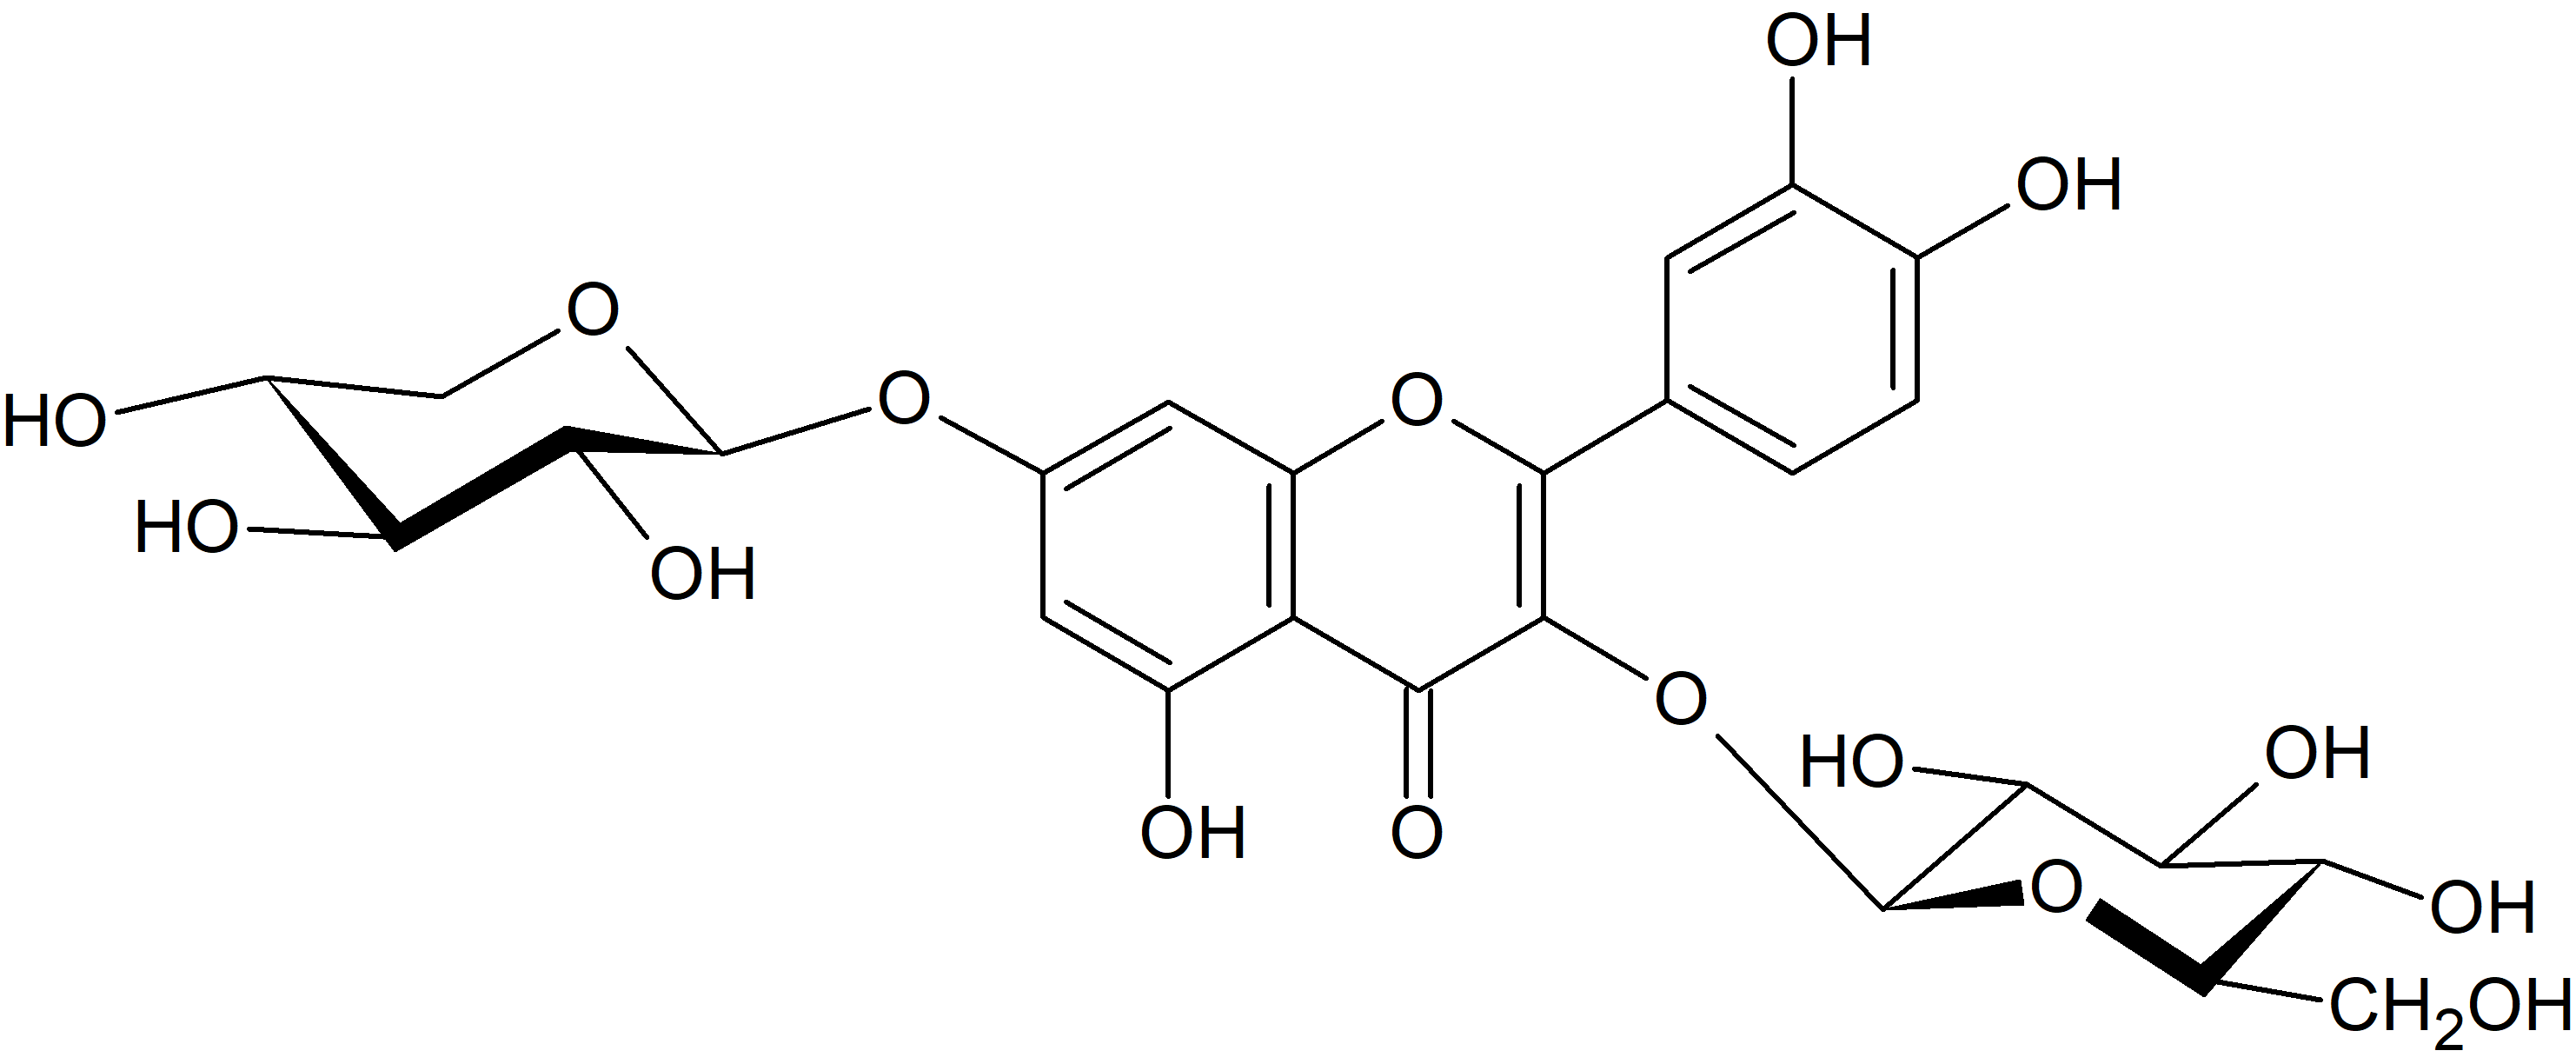 Quercetin 3-O-glucoside-7-O-xyloside